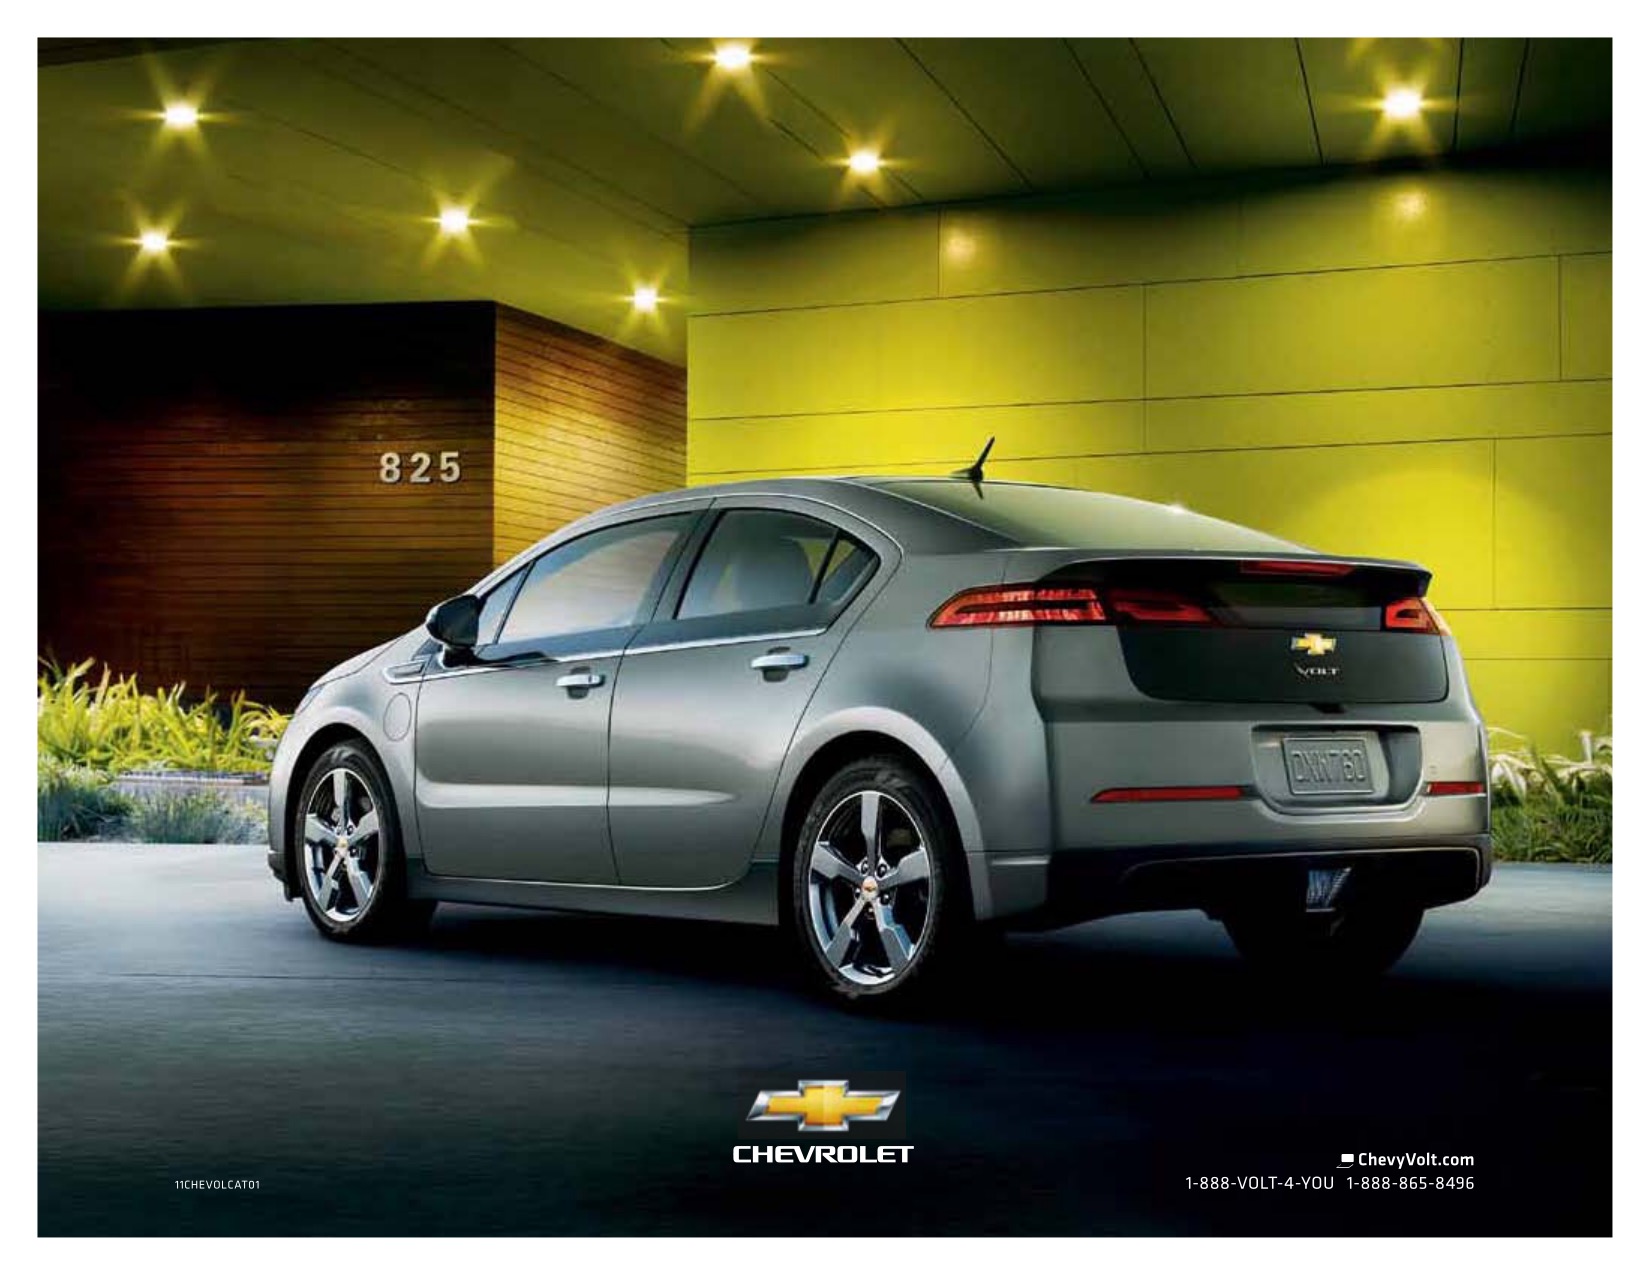 2011 Chevrolet Volt Brochure